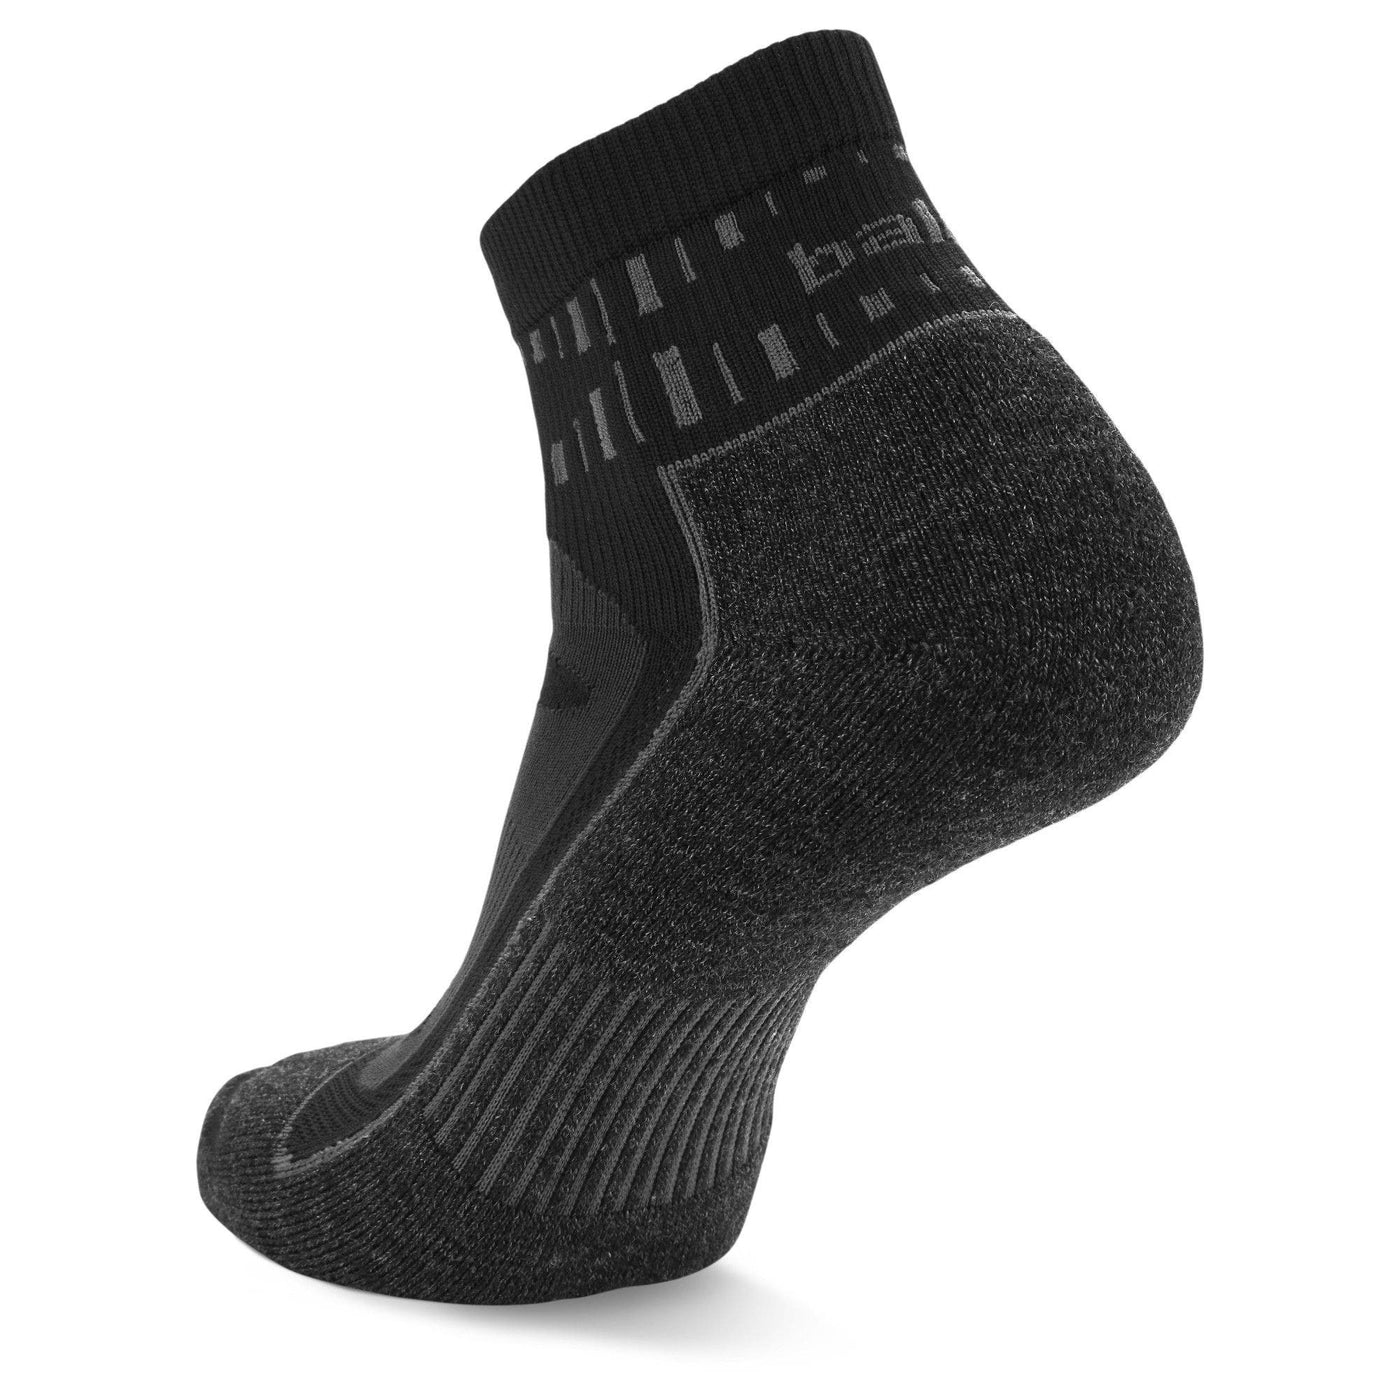 Balega Blister Resist Quarter Socks -  8292-3300